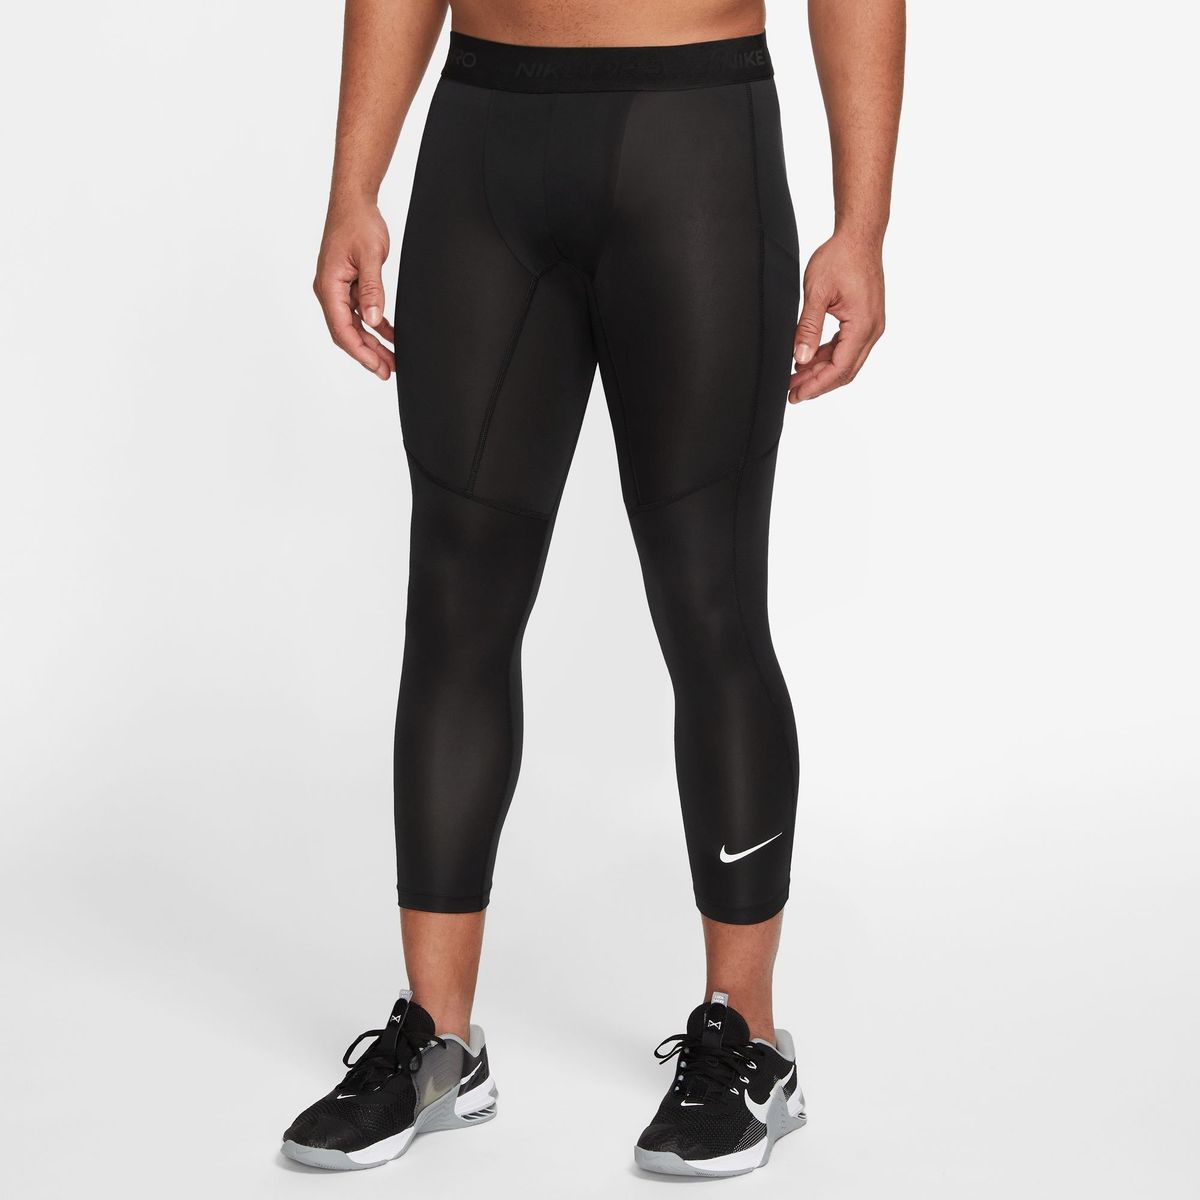 Nike Men's Pro Dri-FIT 3/4-Length Fitness Tights - Black/White | Shop ...